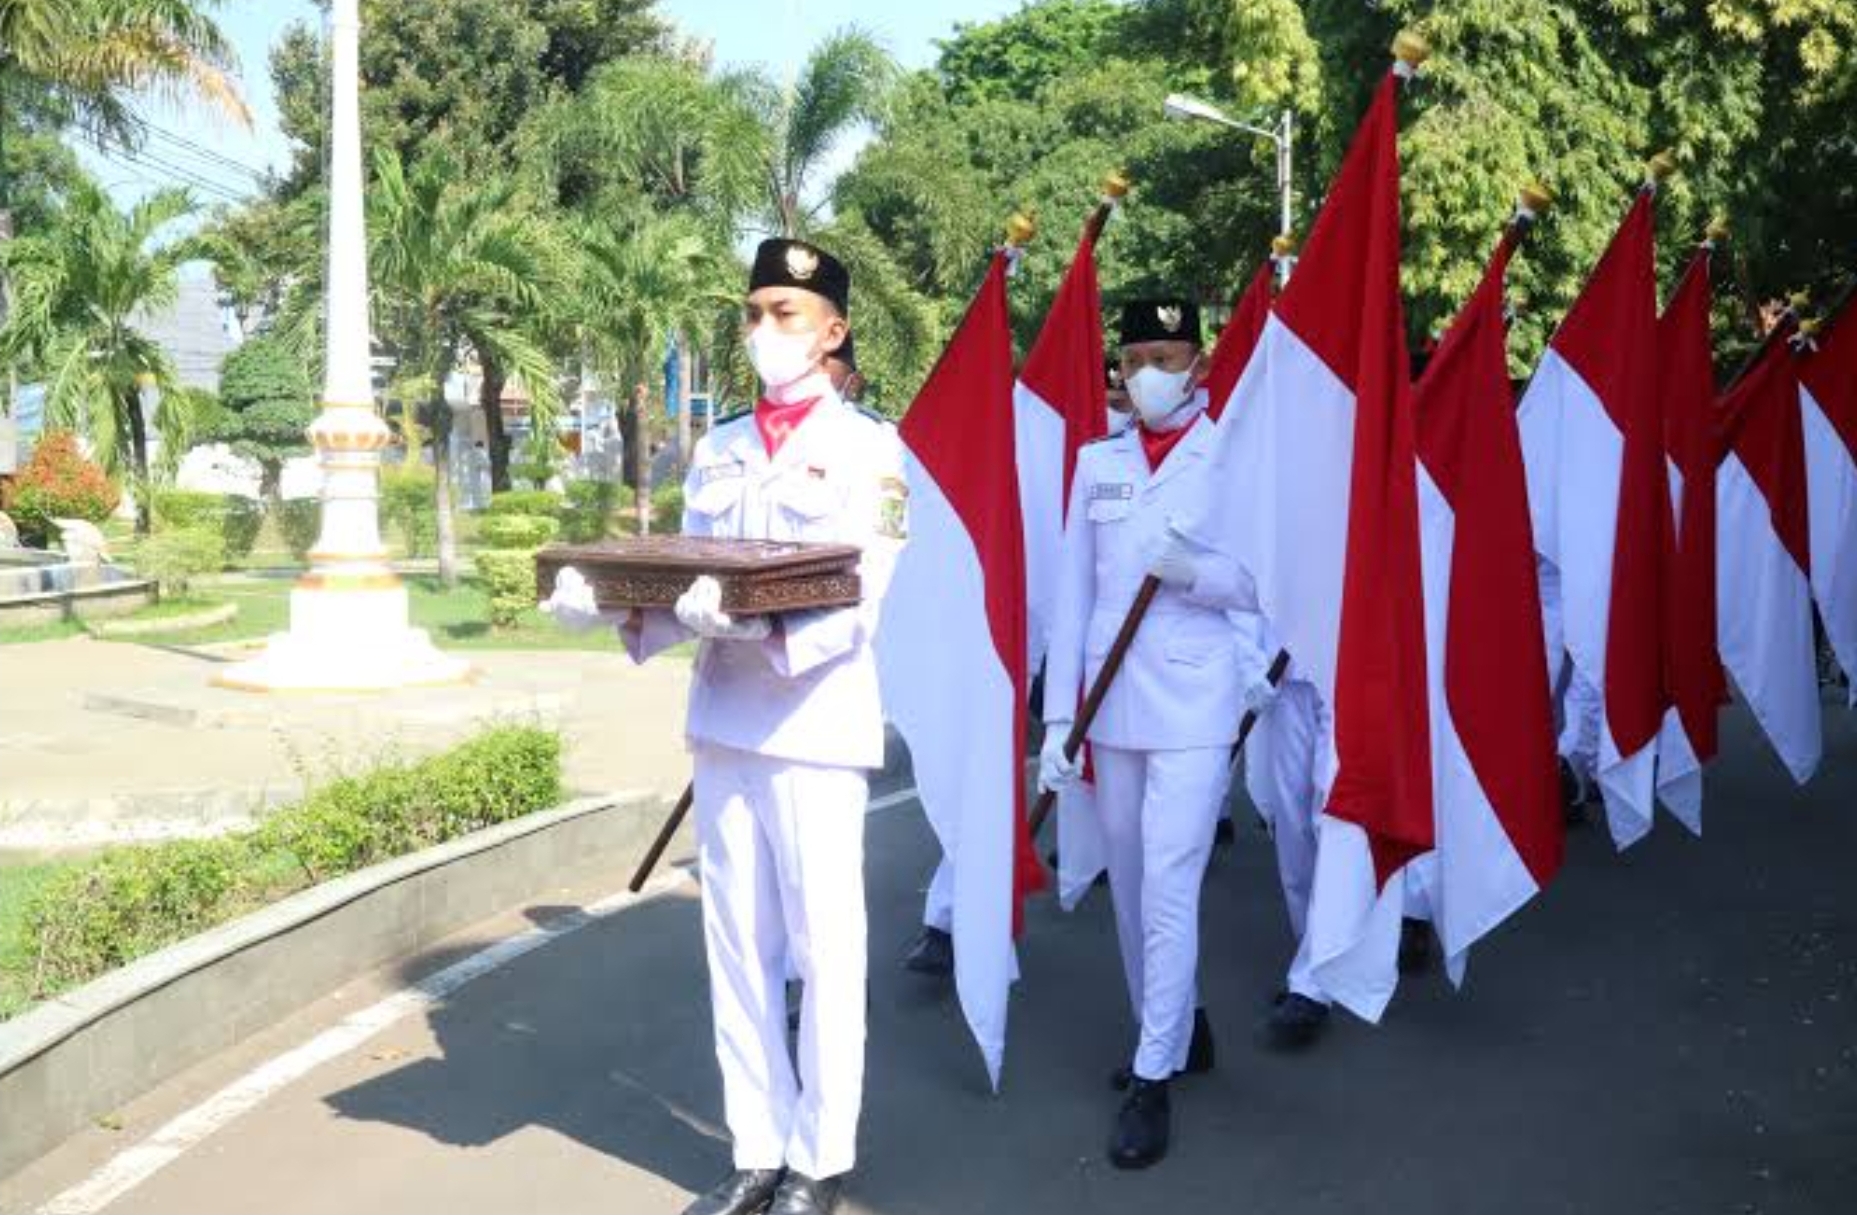 PENGUMUMAN: Begini Rekayasa Lalu Lintas Saat Kirab Merah Putih di Kota Cirebon, Mohon Disimak